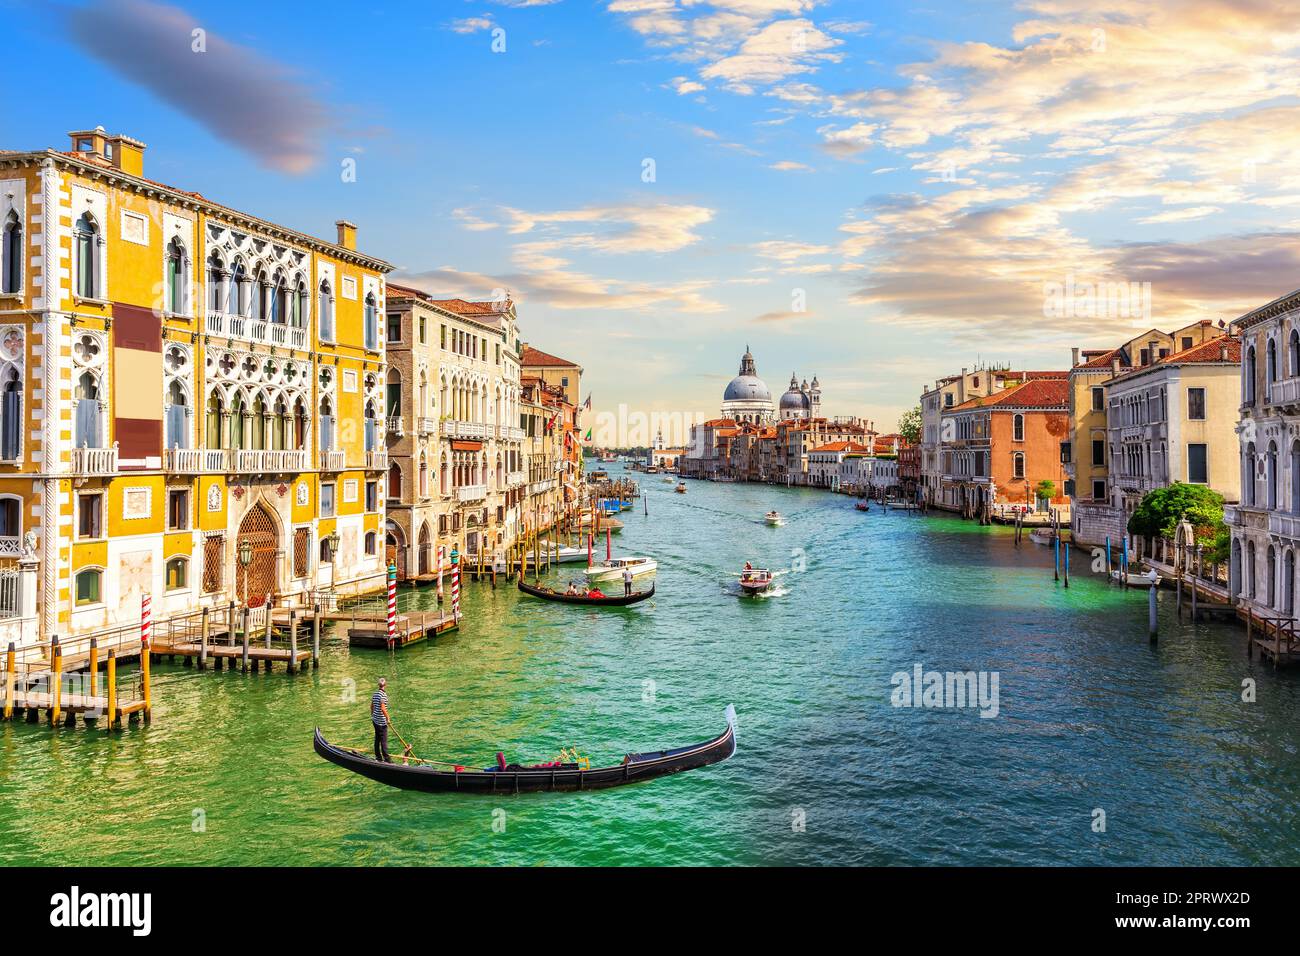 Gondoliers in the Grand Canal of Venice near Santa Maria della Salute, Italy Stock Photo